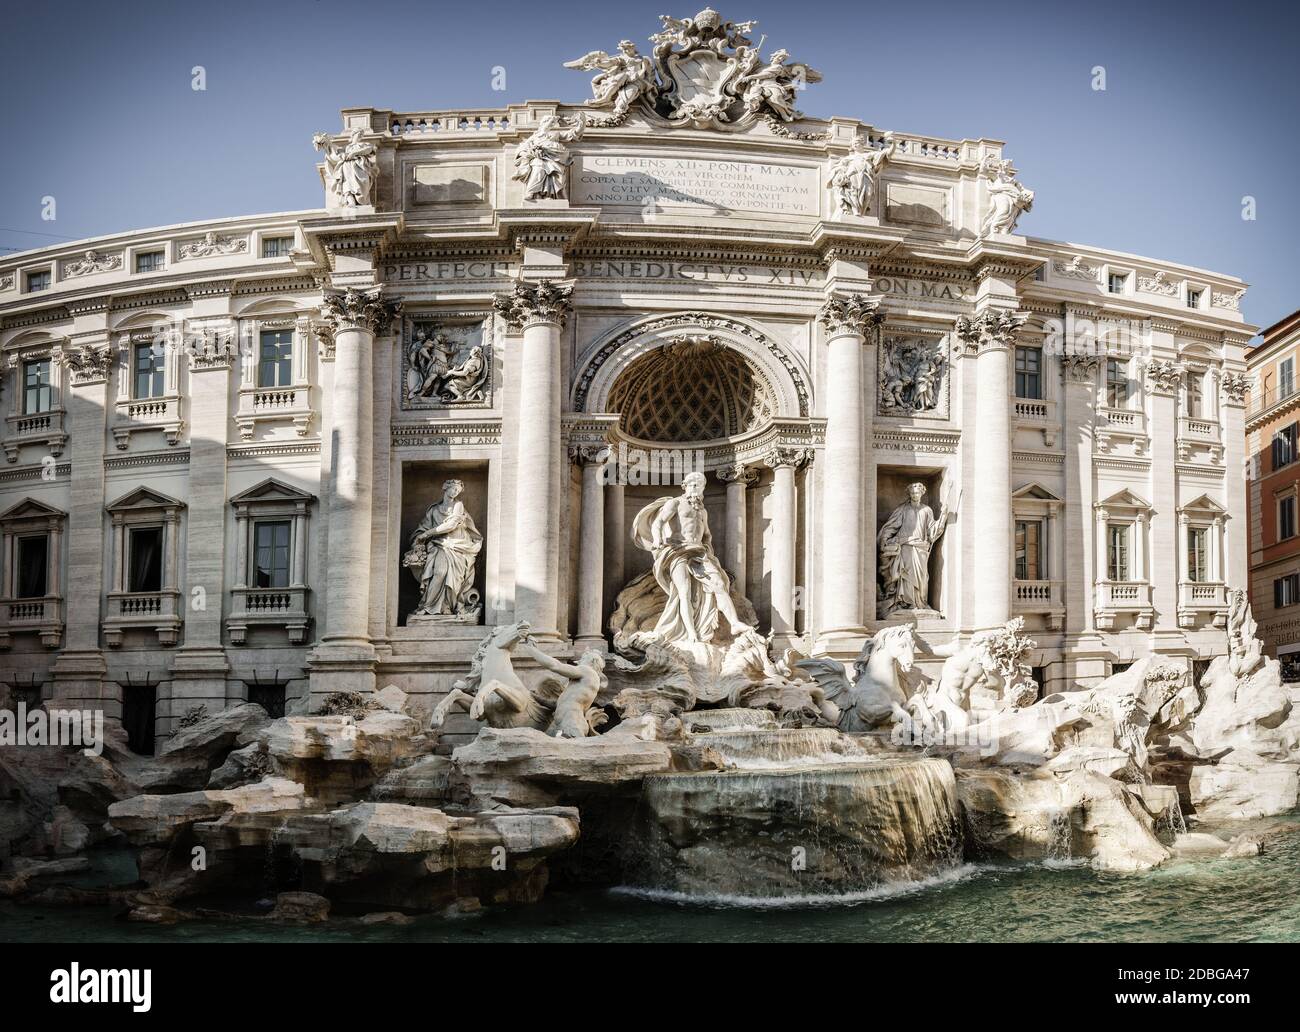 Vue panoramique sur la Fontaine de Trevi et du Palazzo Poli à Rome, Italie Banque D'Images